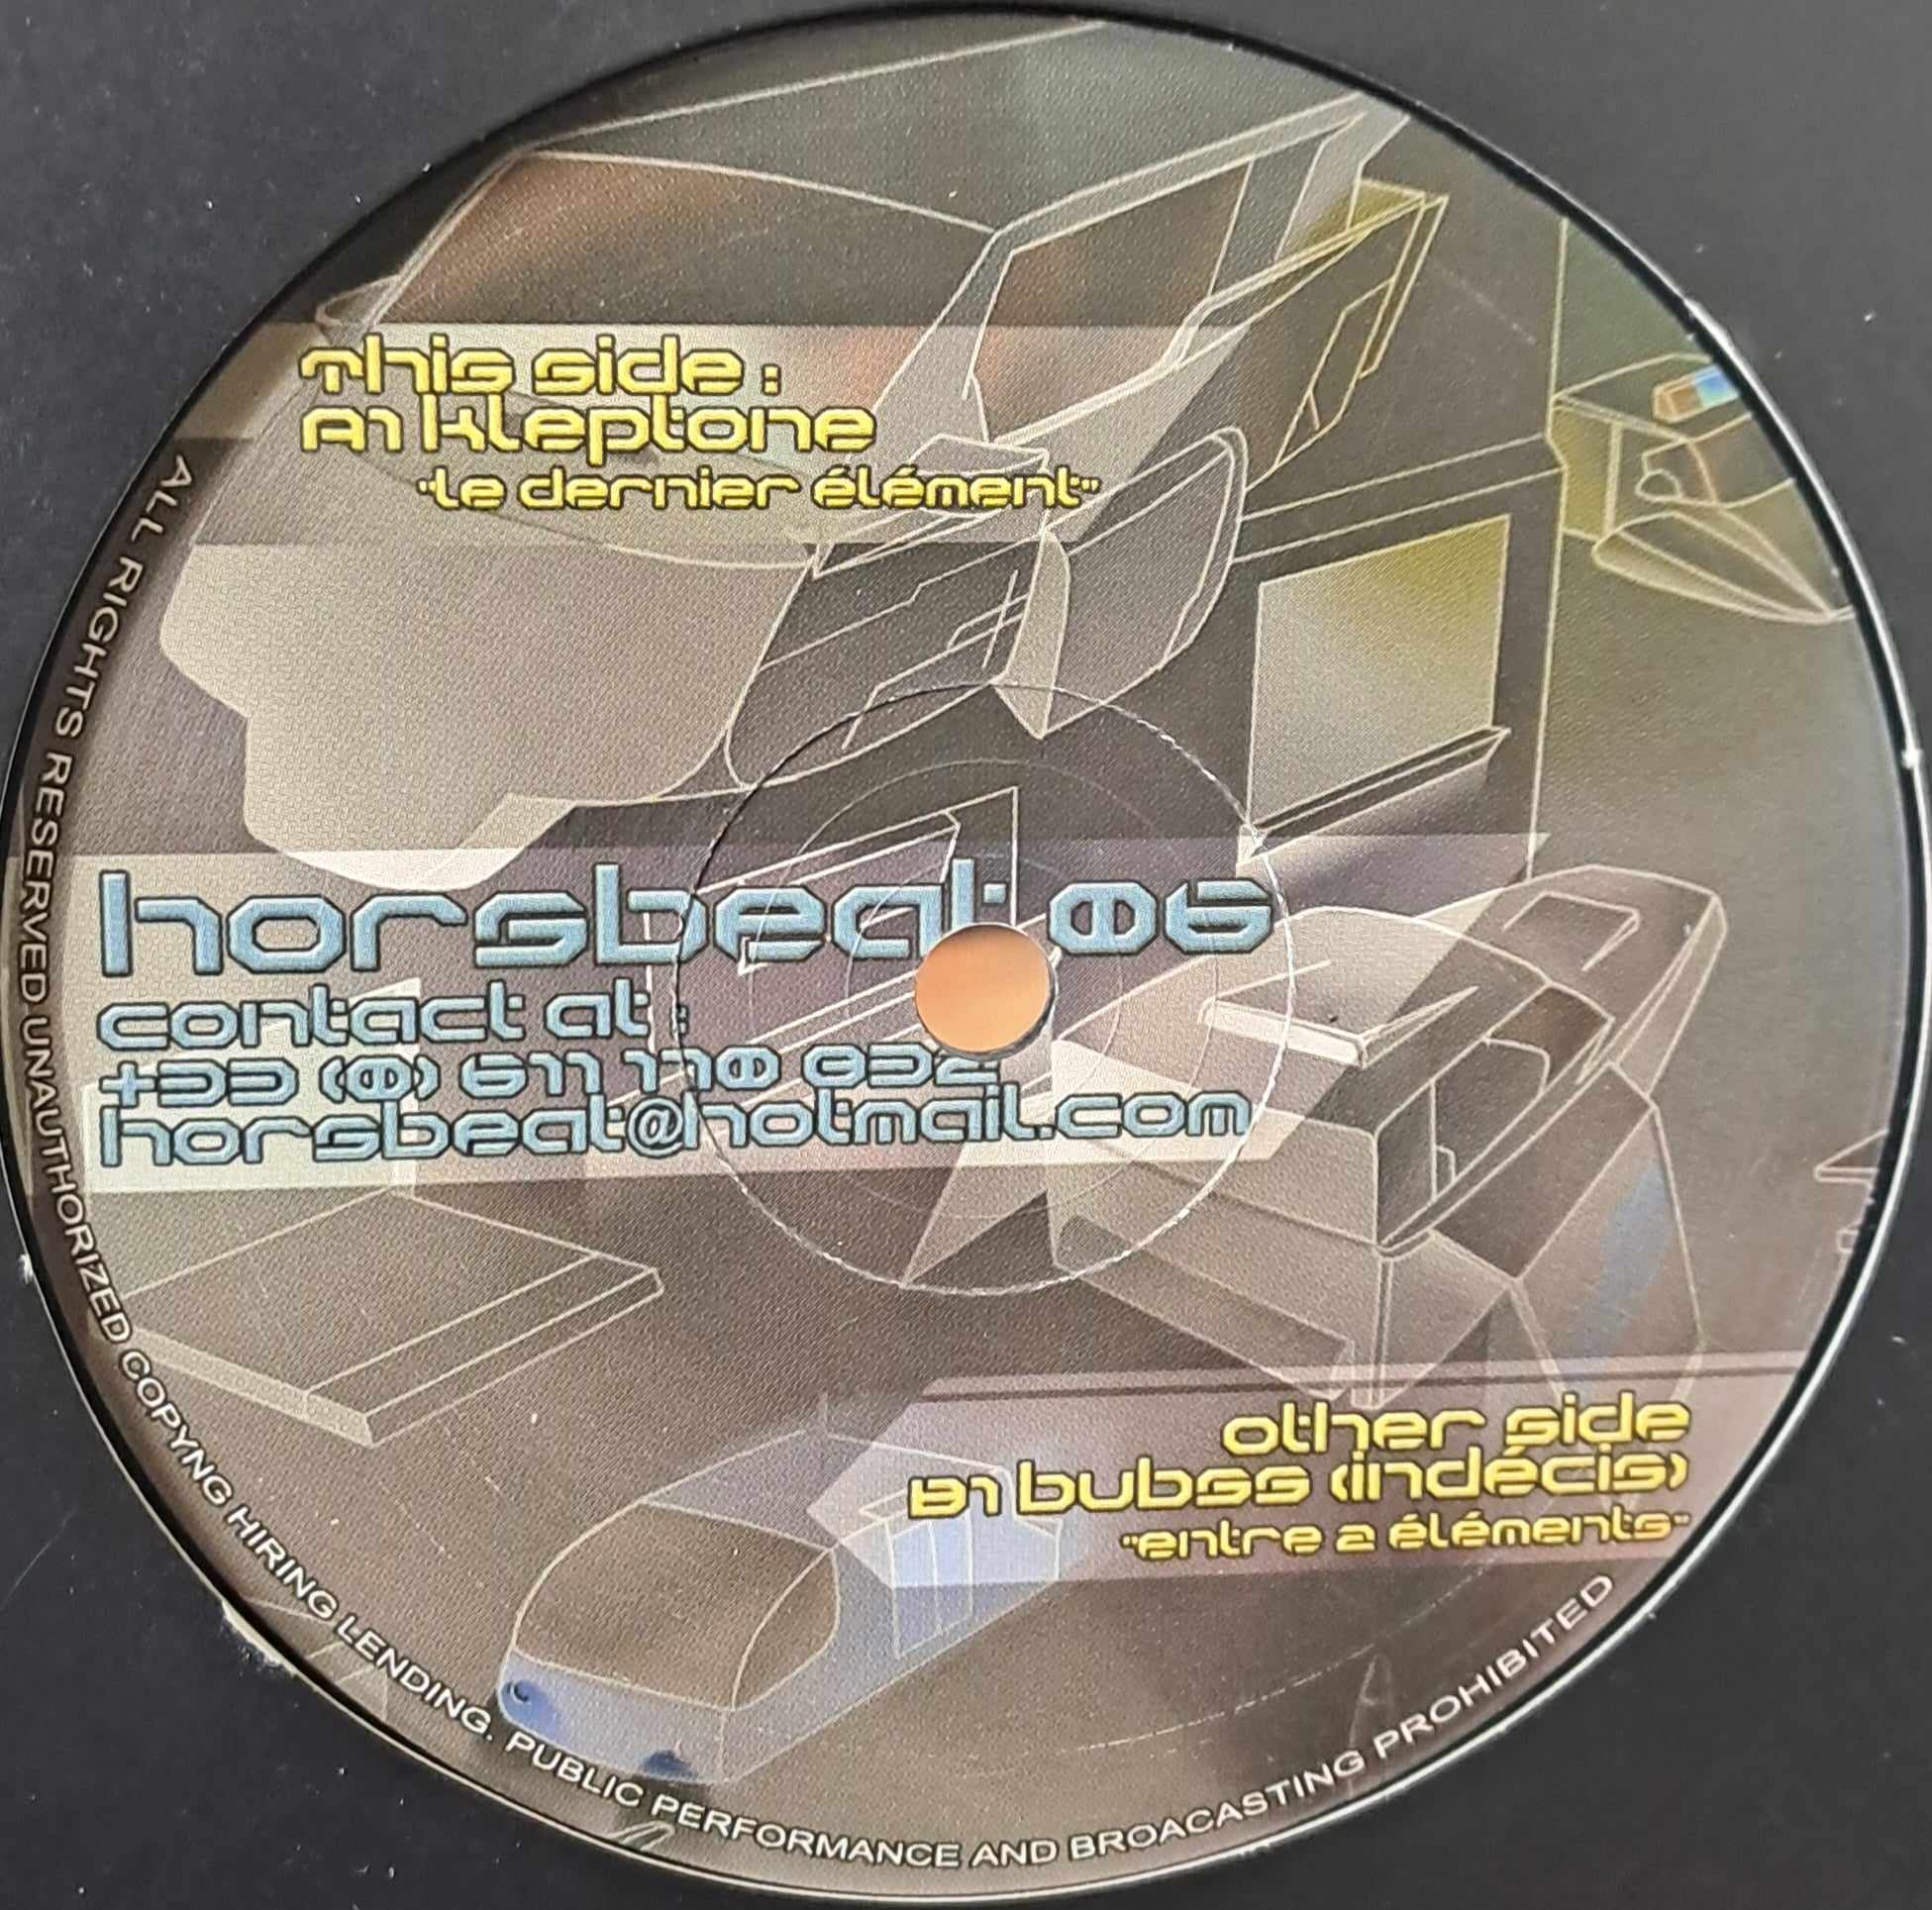 Hors Beat Records 06 - vinyle freetekno